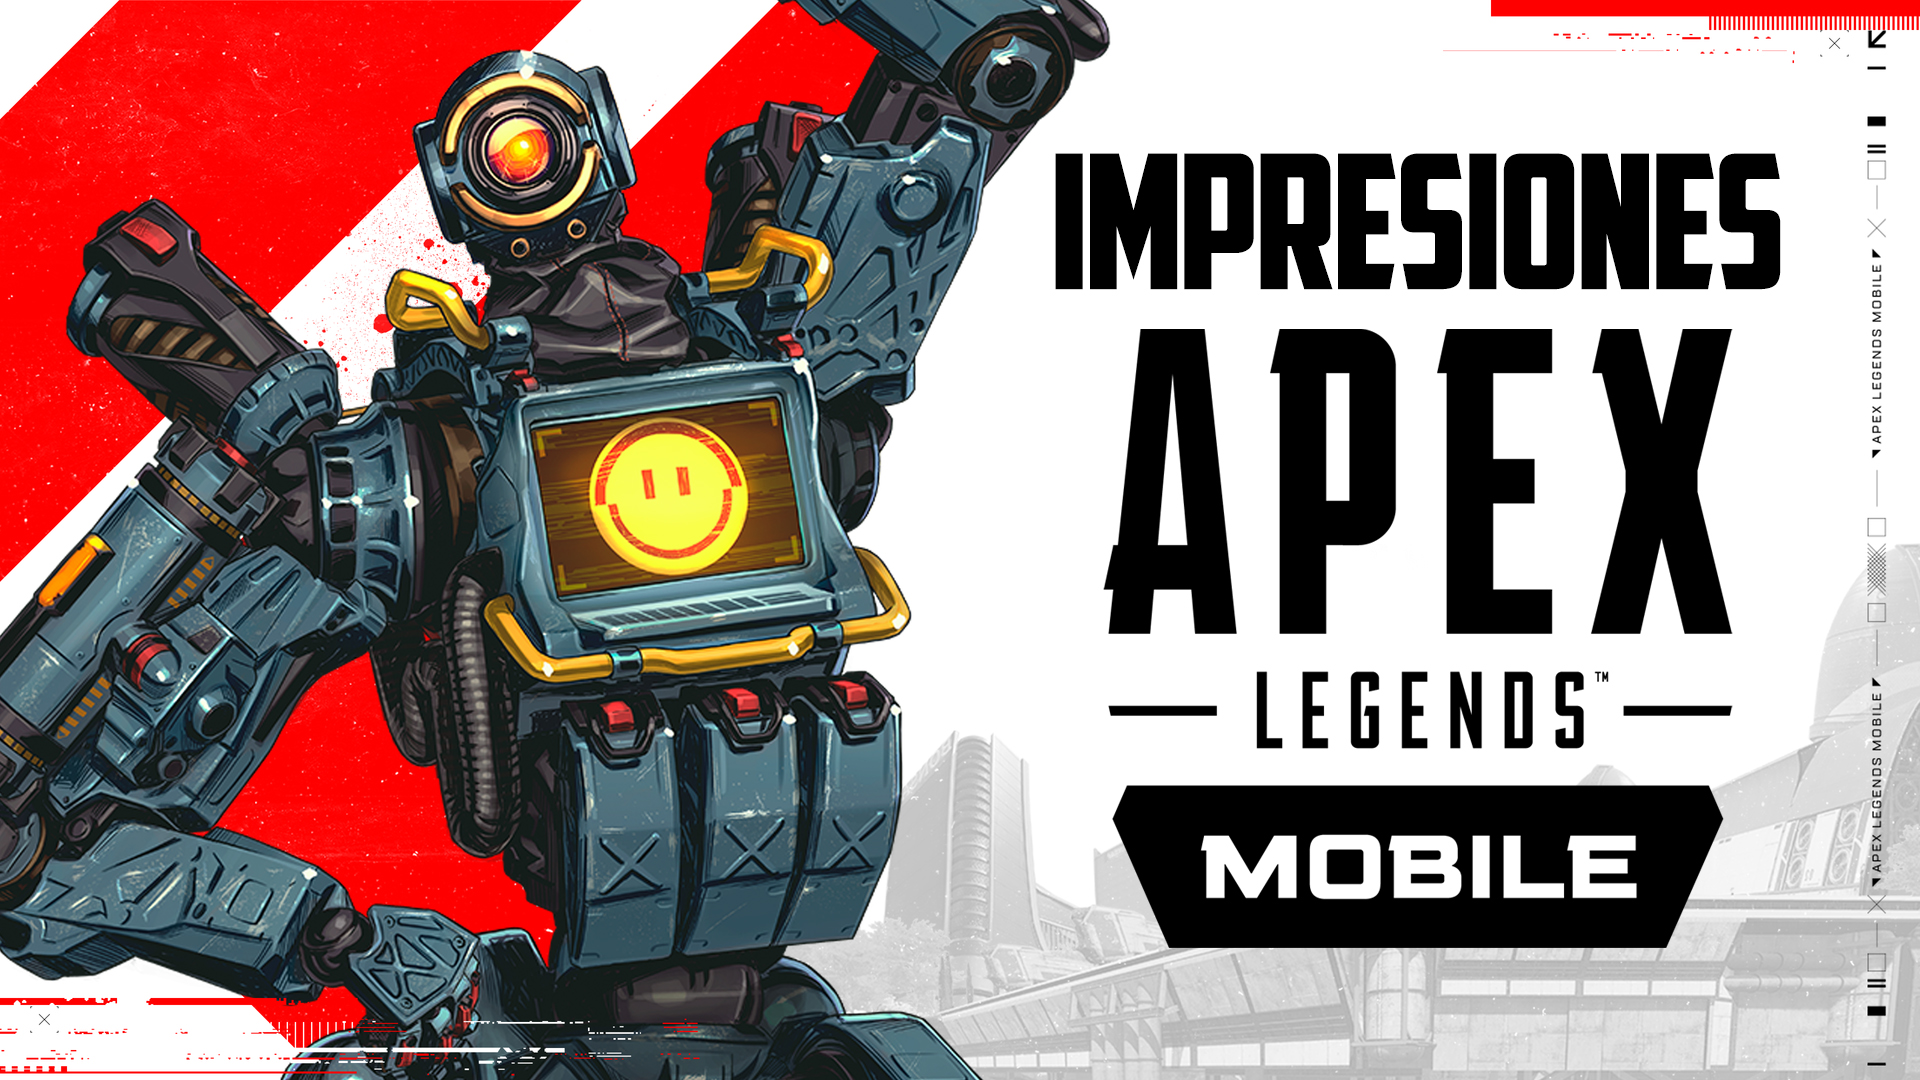 Impresiones Apex Legend Mobile – Todo el Frenetismo de Leyenda en la Palma de tu Mano